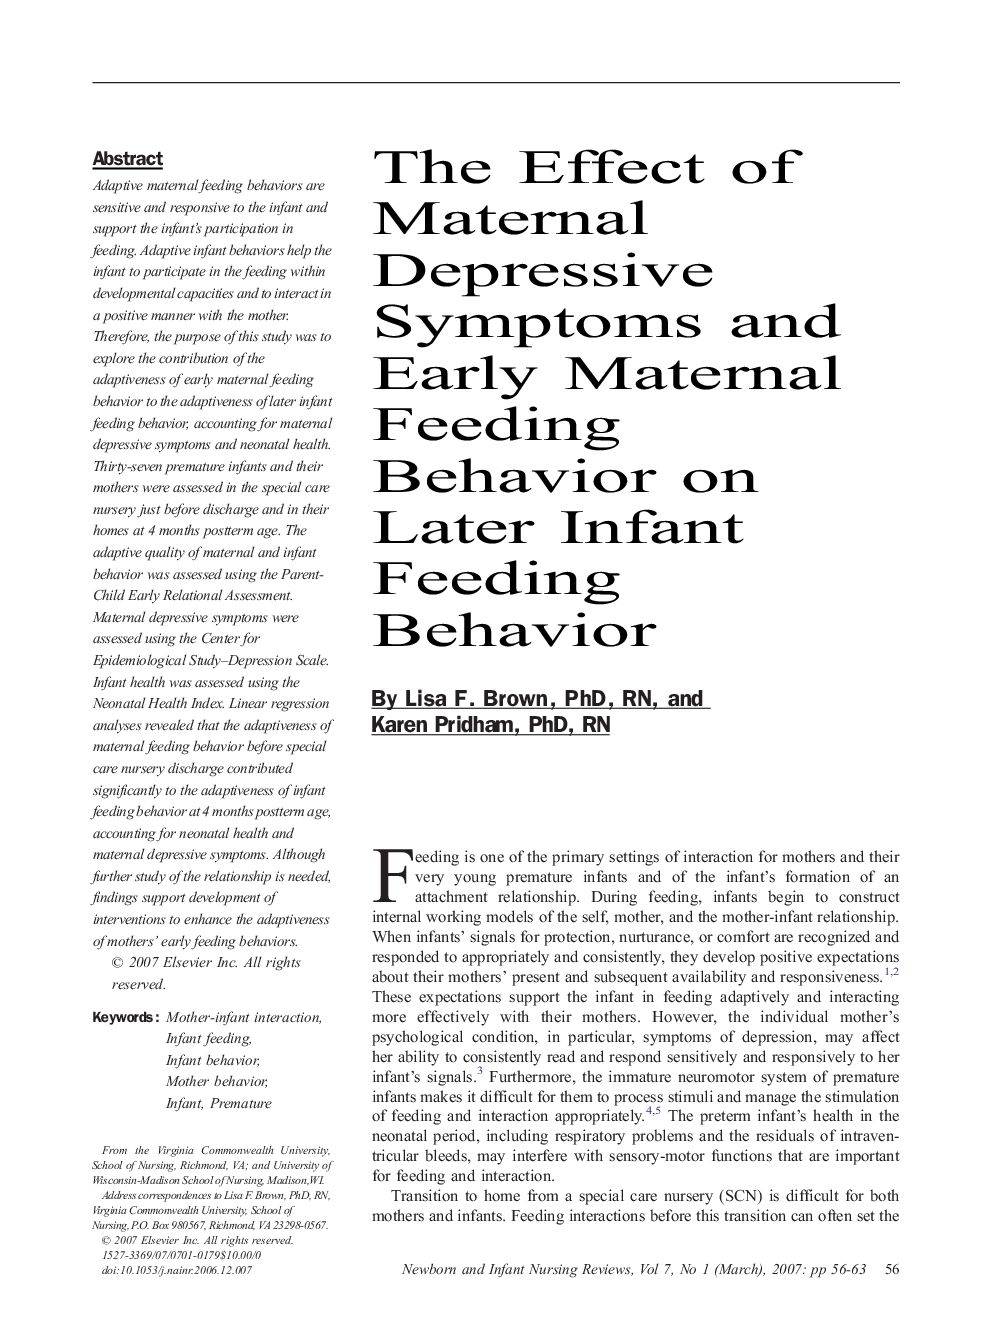 The Effect of Maternal Depressive Symptoms and Early Maternal Feeding Behavior on Later Infant Feeding Behavior 